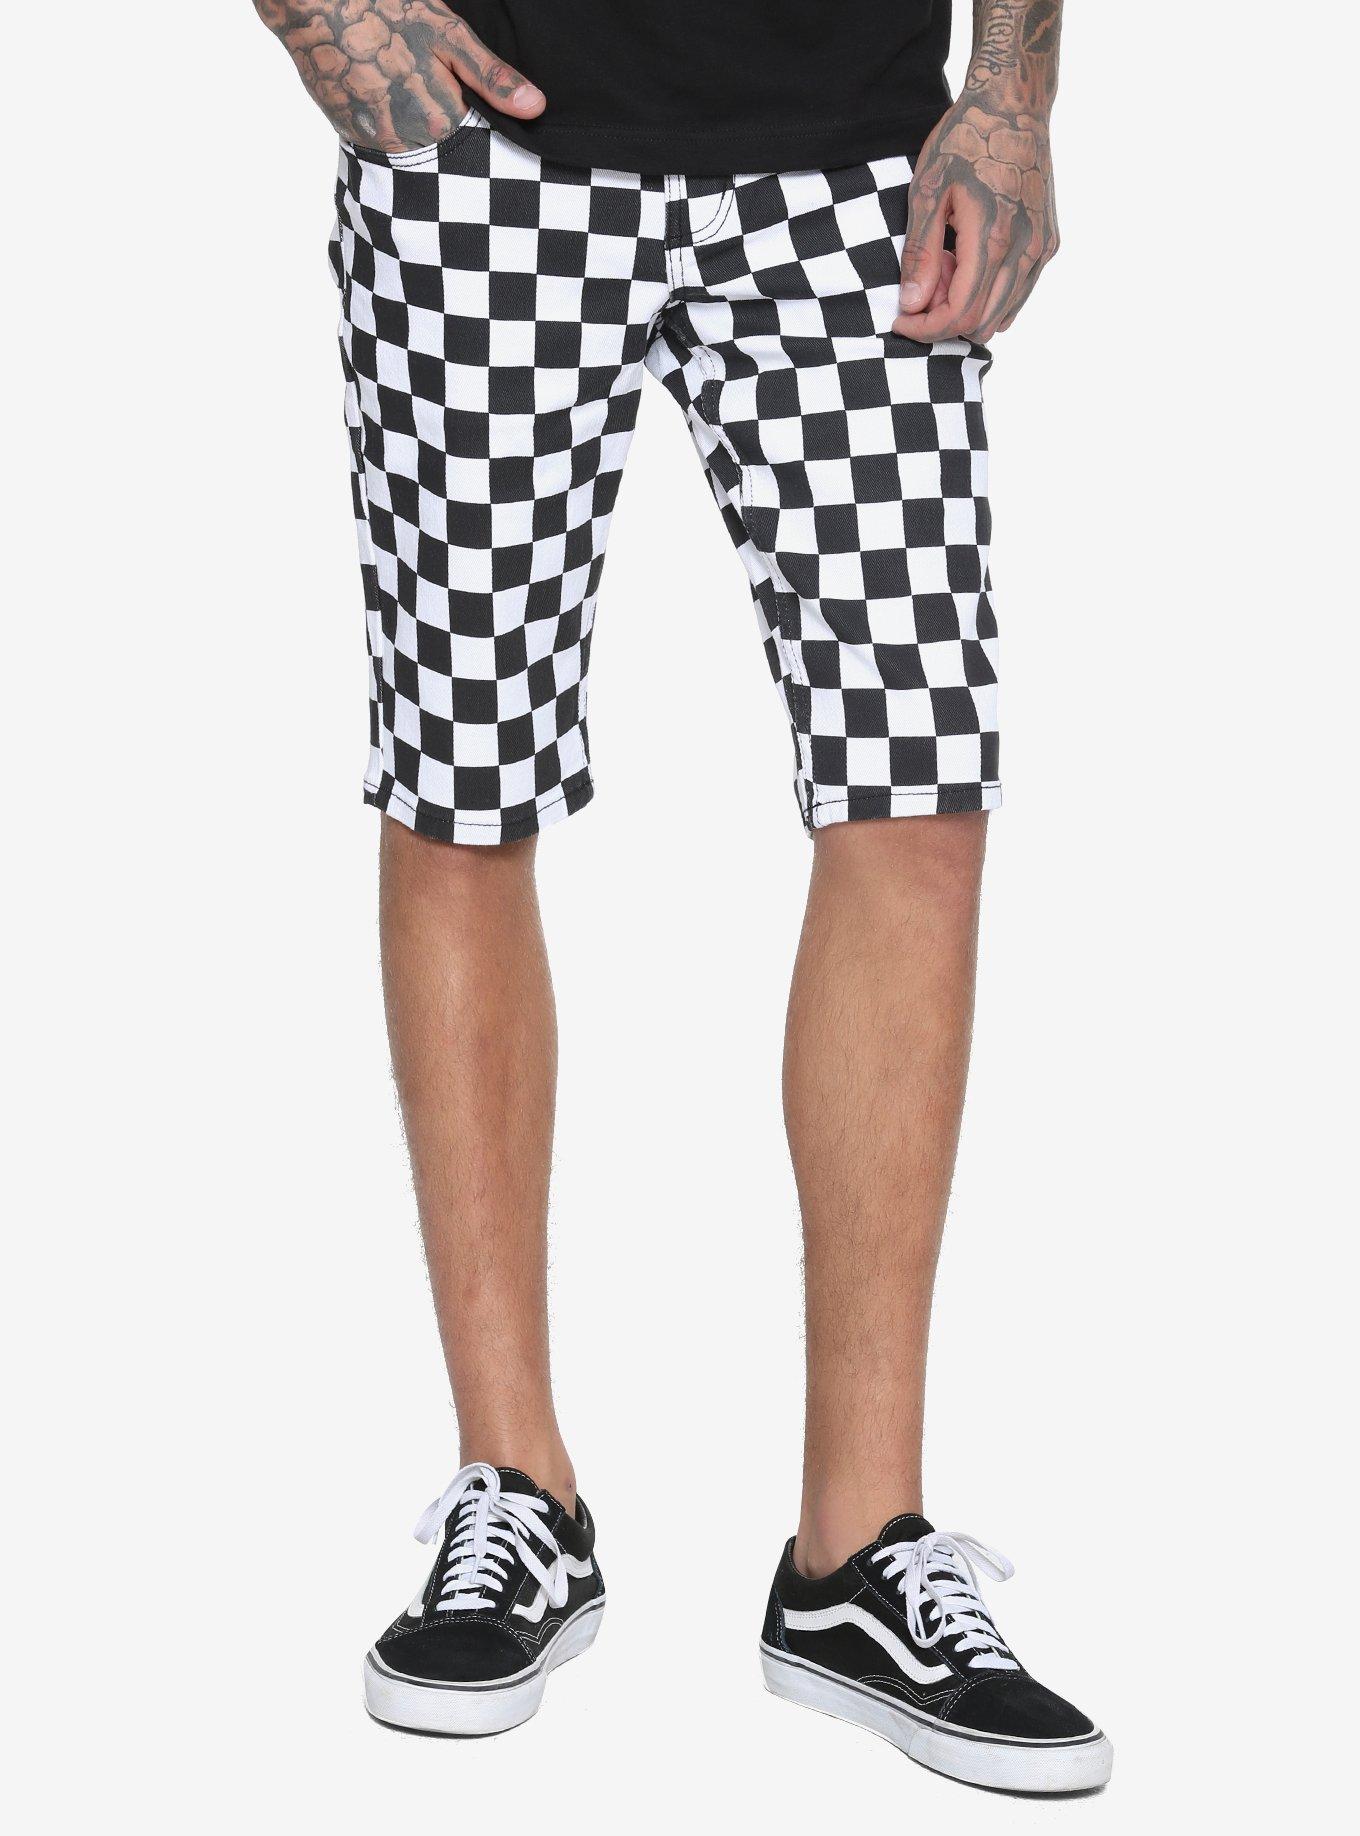 XXX RUDE Black & White Checkered Skinny Shorts, BLACK, hi-res